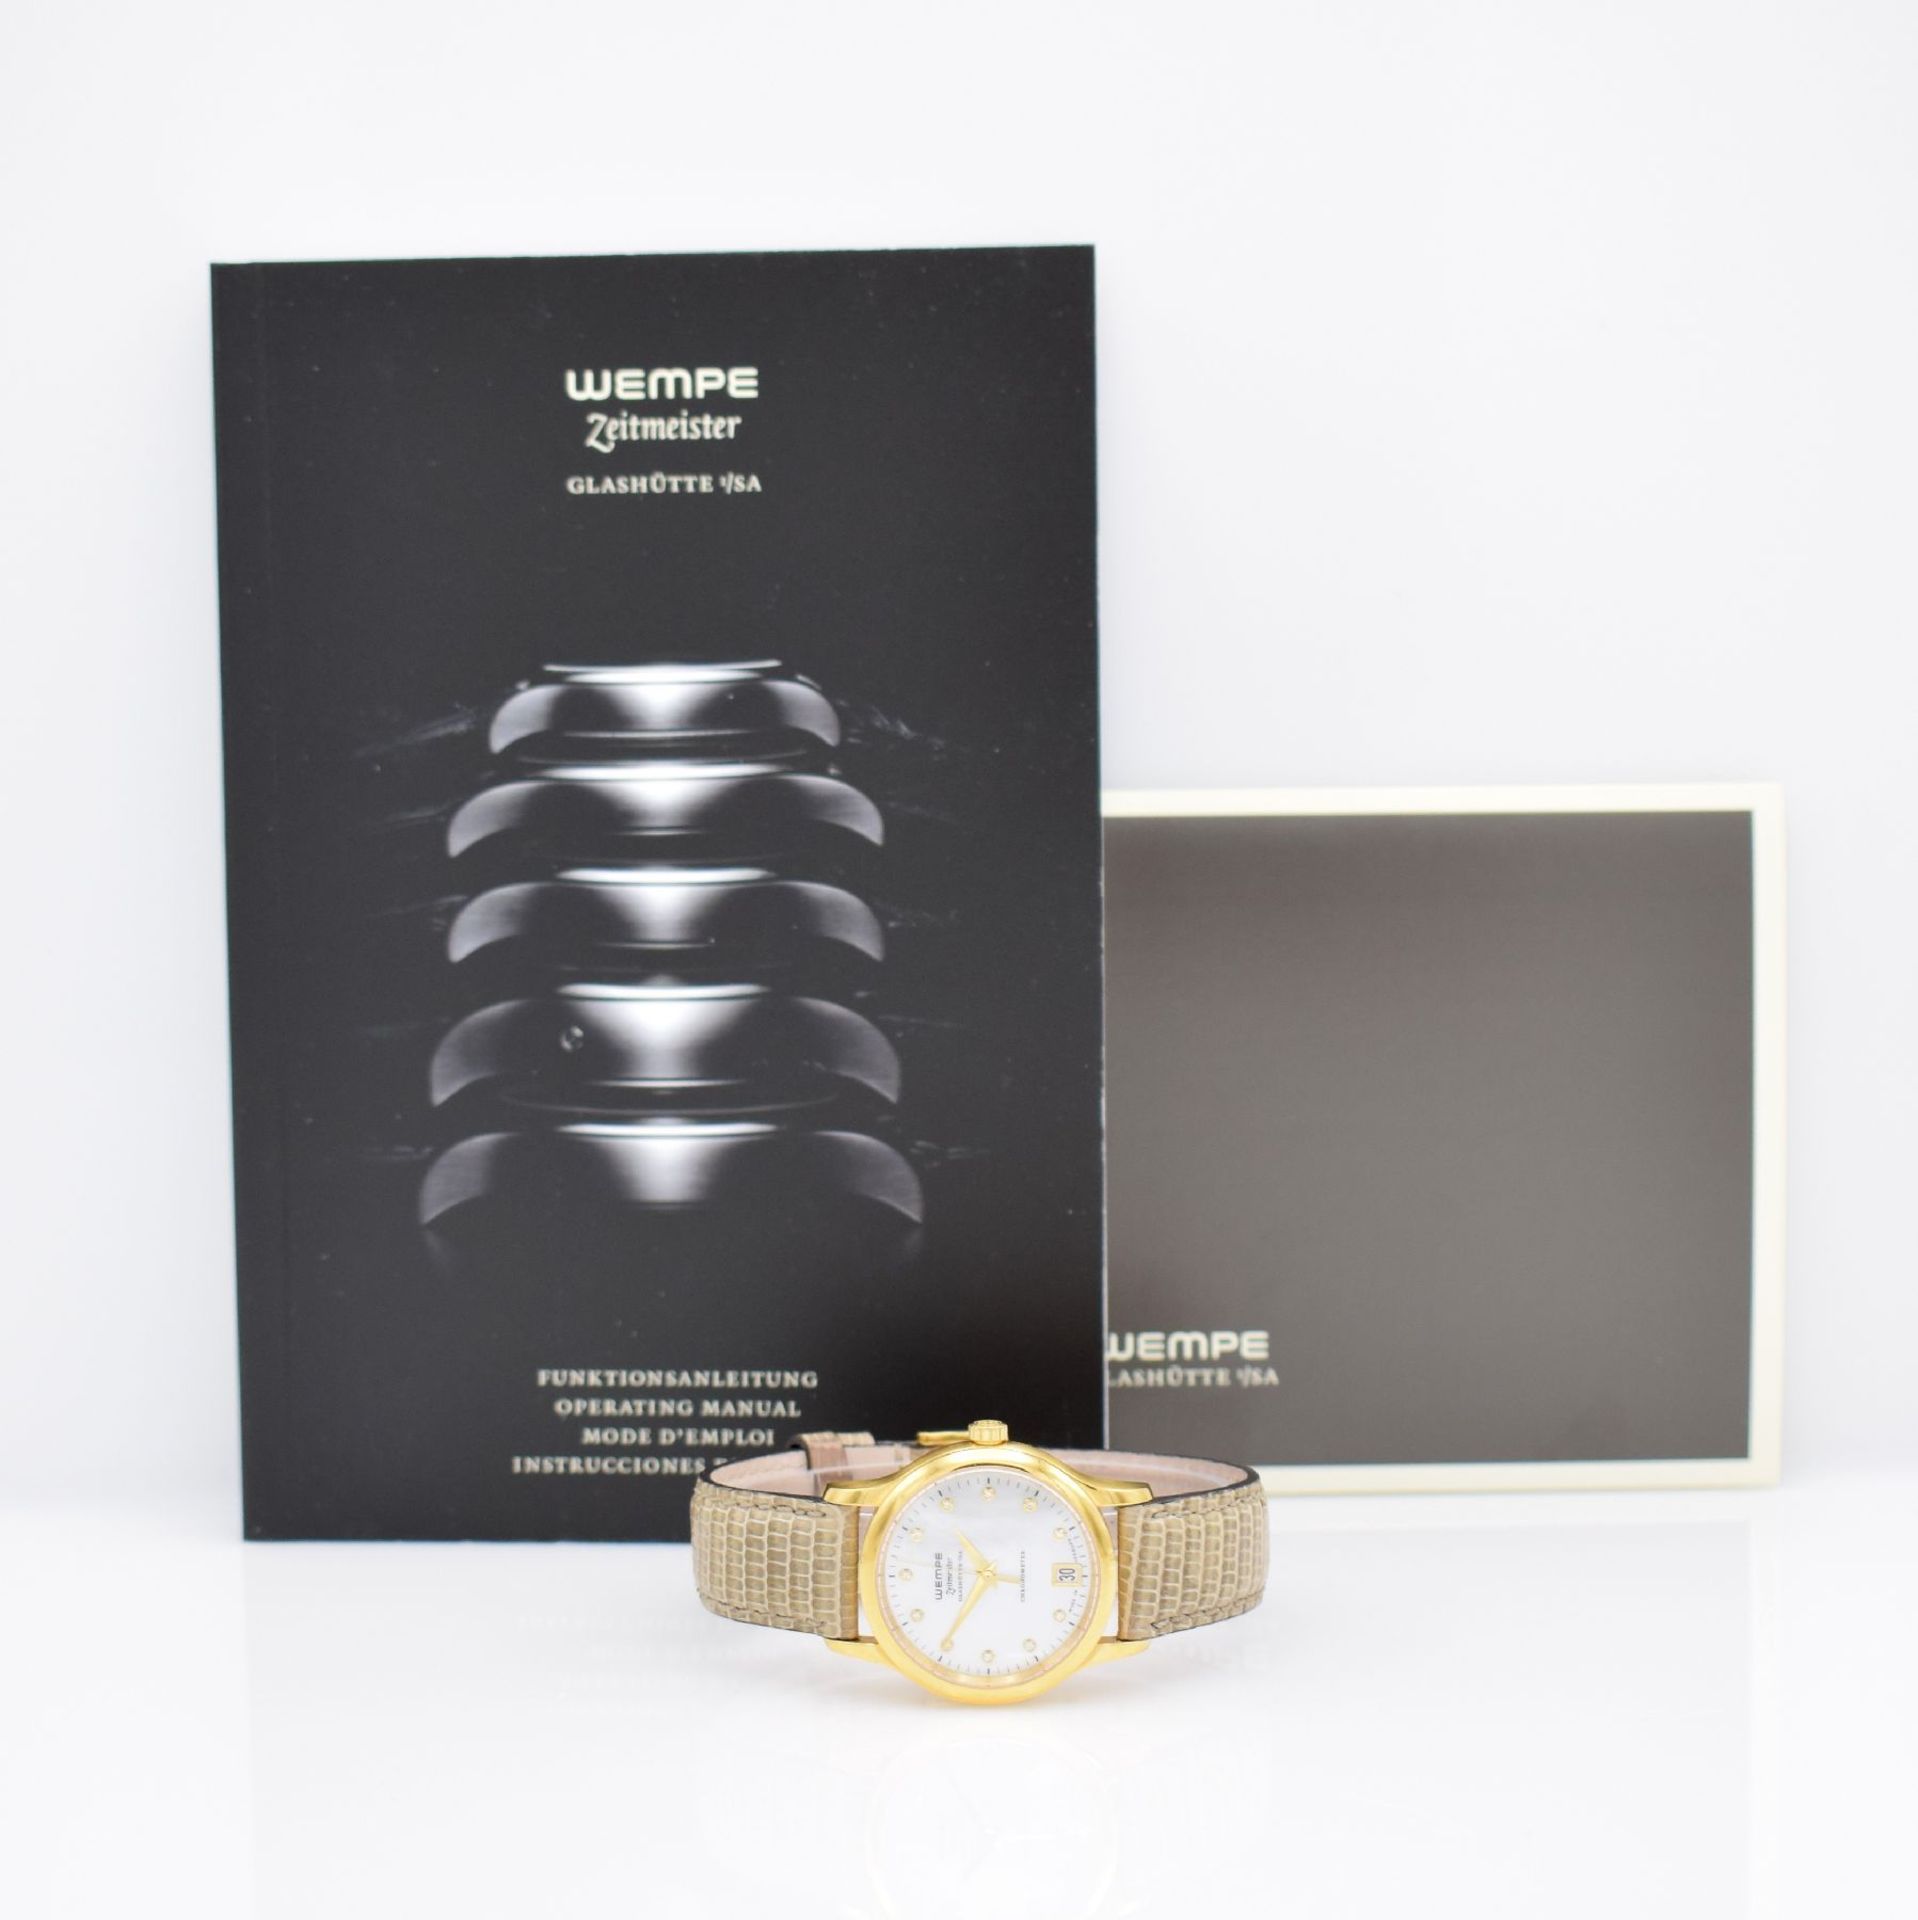 WEMPE Zeitmeister ladies wristwatch, Germany sold in June 2015 according to certificate, quartz, - Bild 8 aus 9